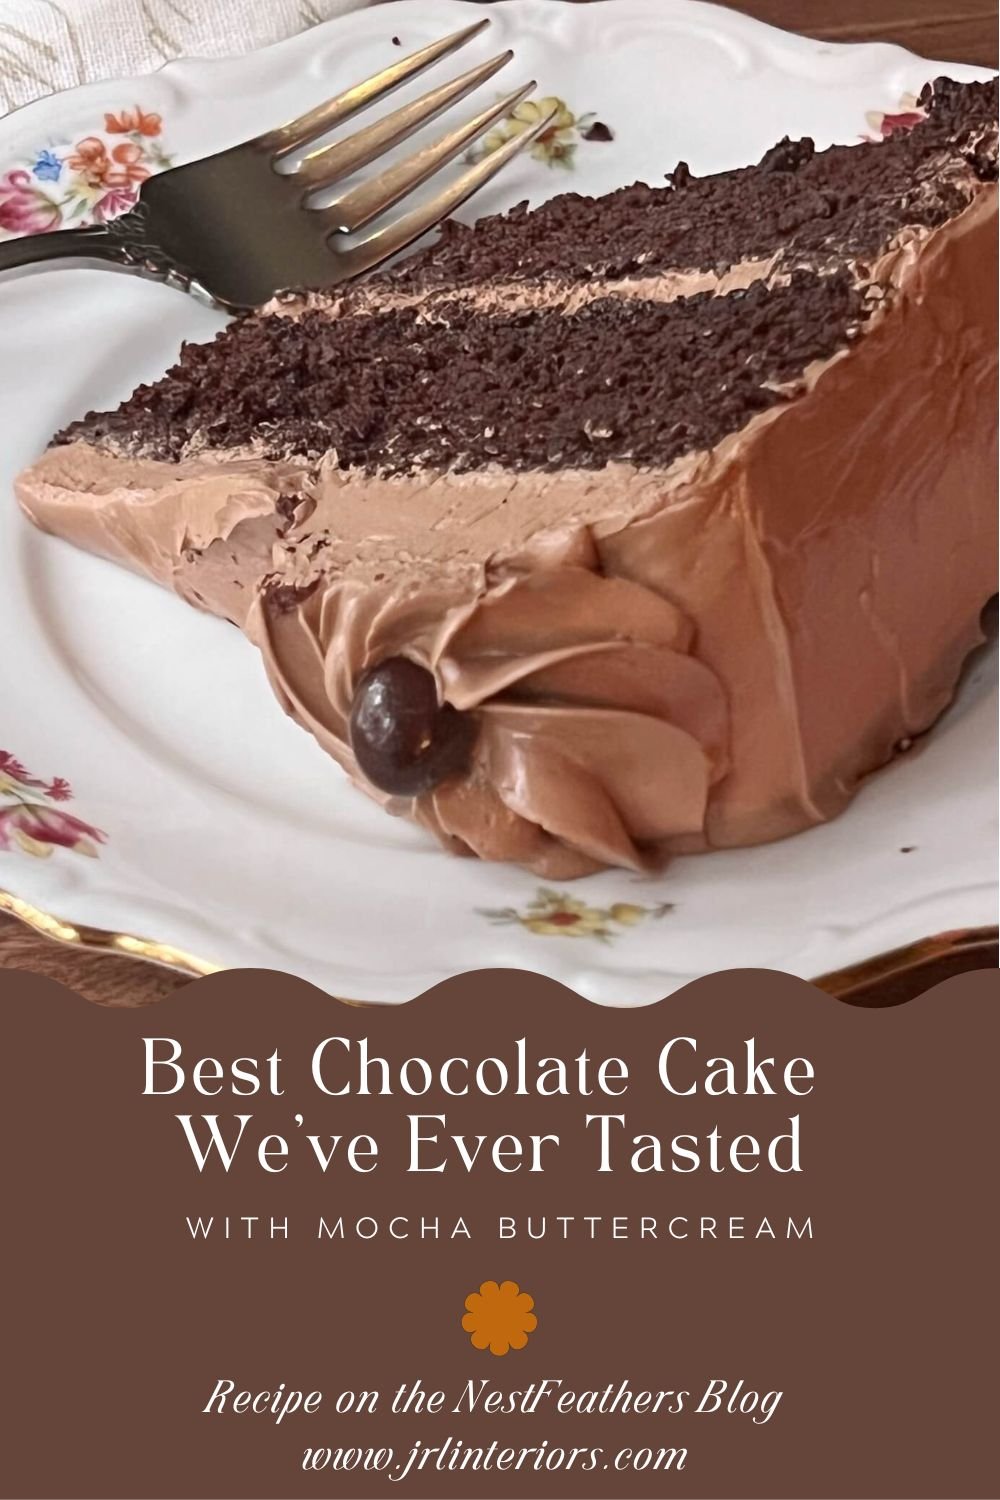 https://images.squarespace-cdn.com/content/v1/59a07b67e4fcb555d0391cdc/7f27e484-8712-48b0-b4ea-c5de08e0c58d/Best+Chocolate+Cake+Ever.jpg